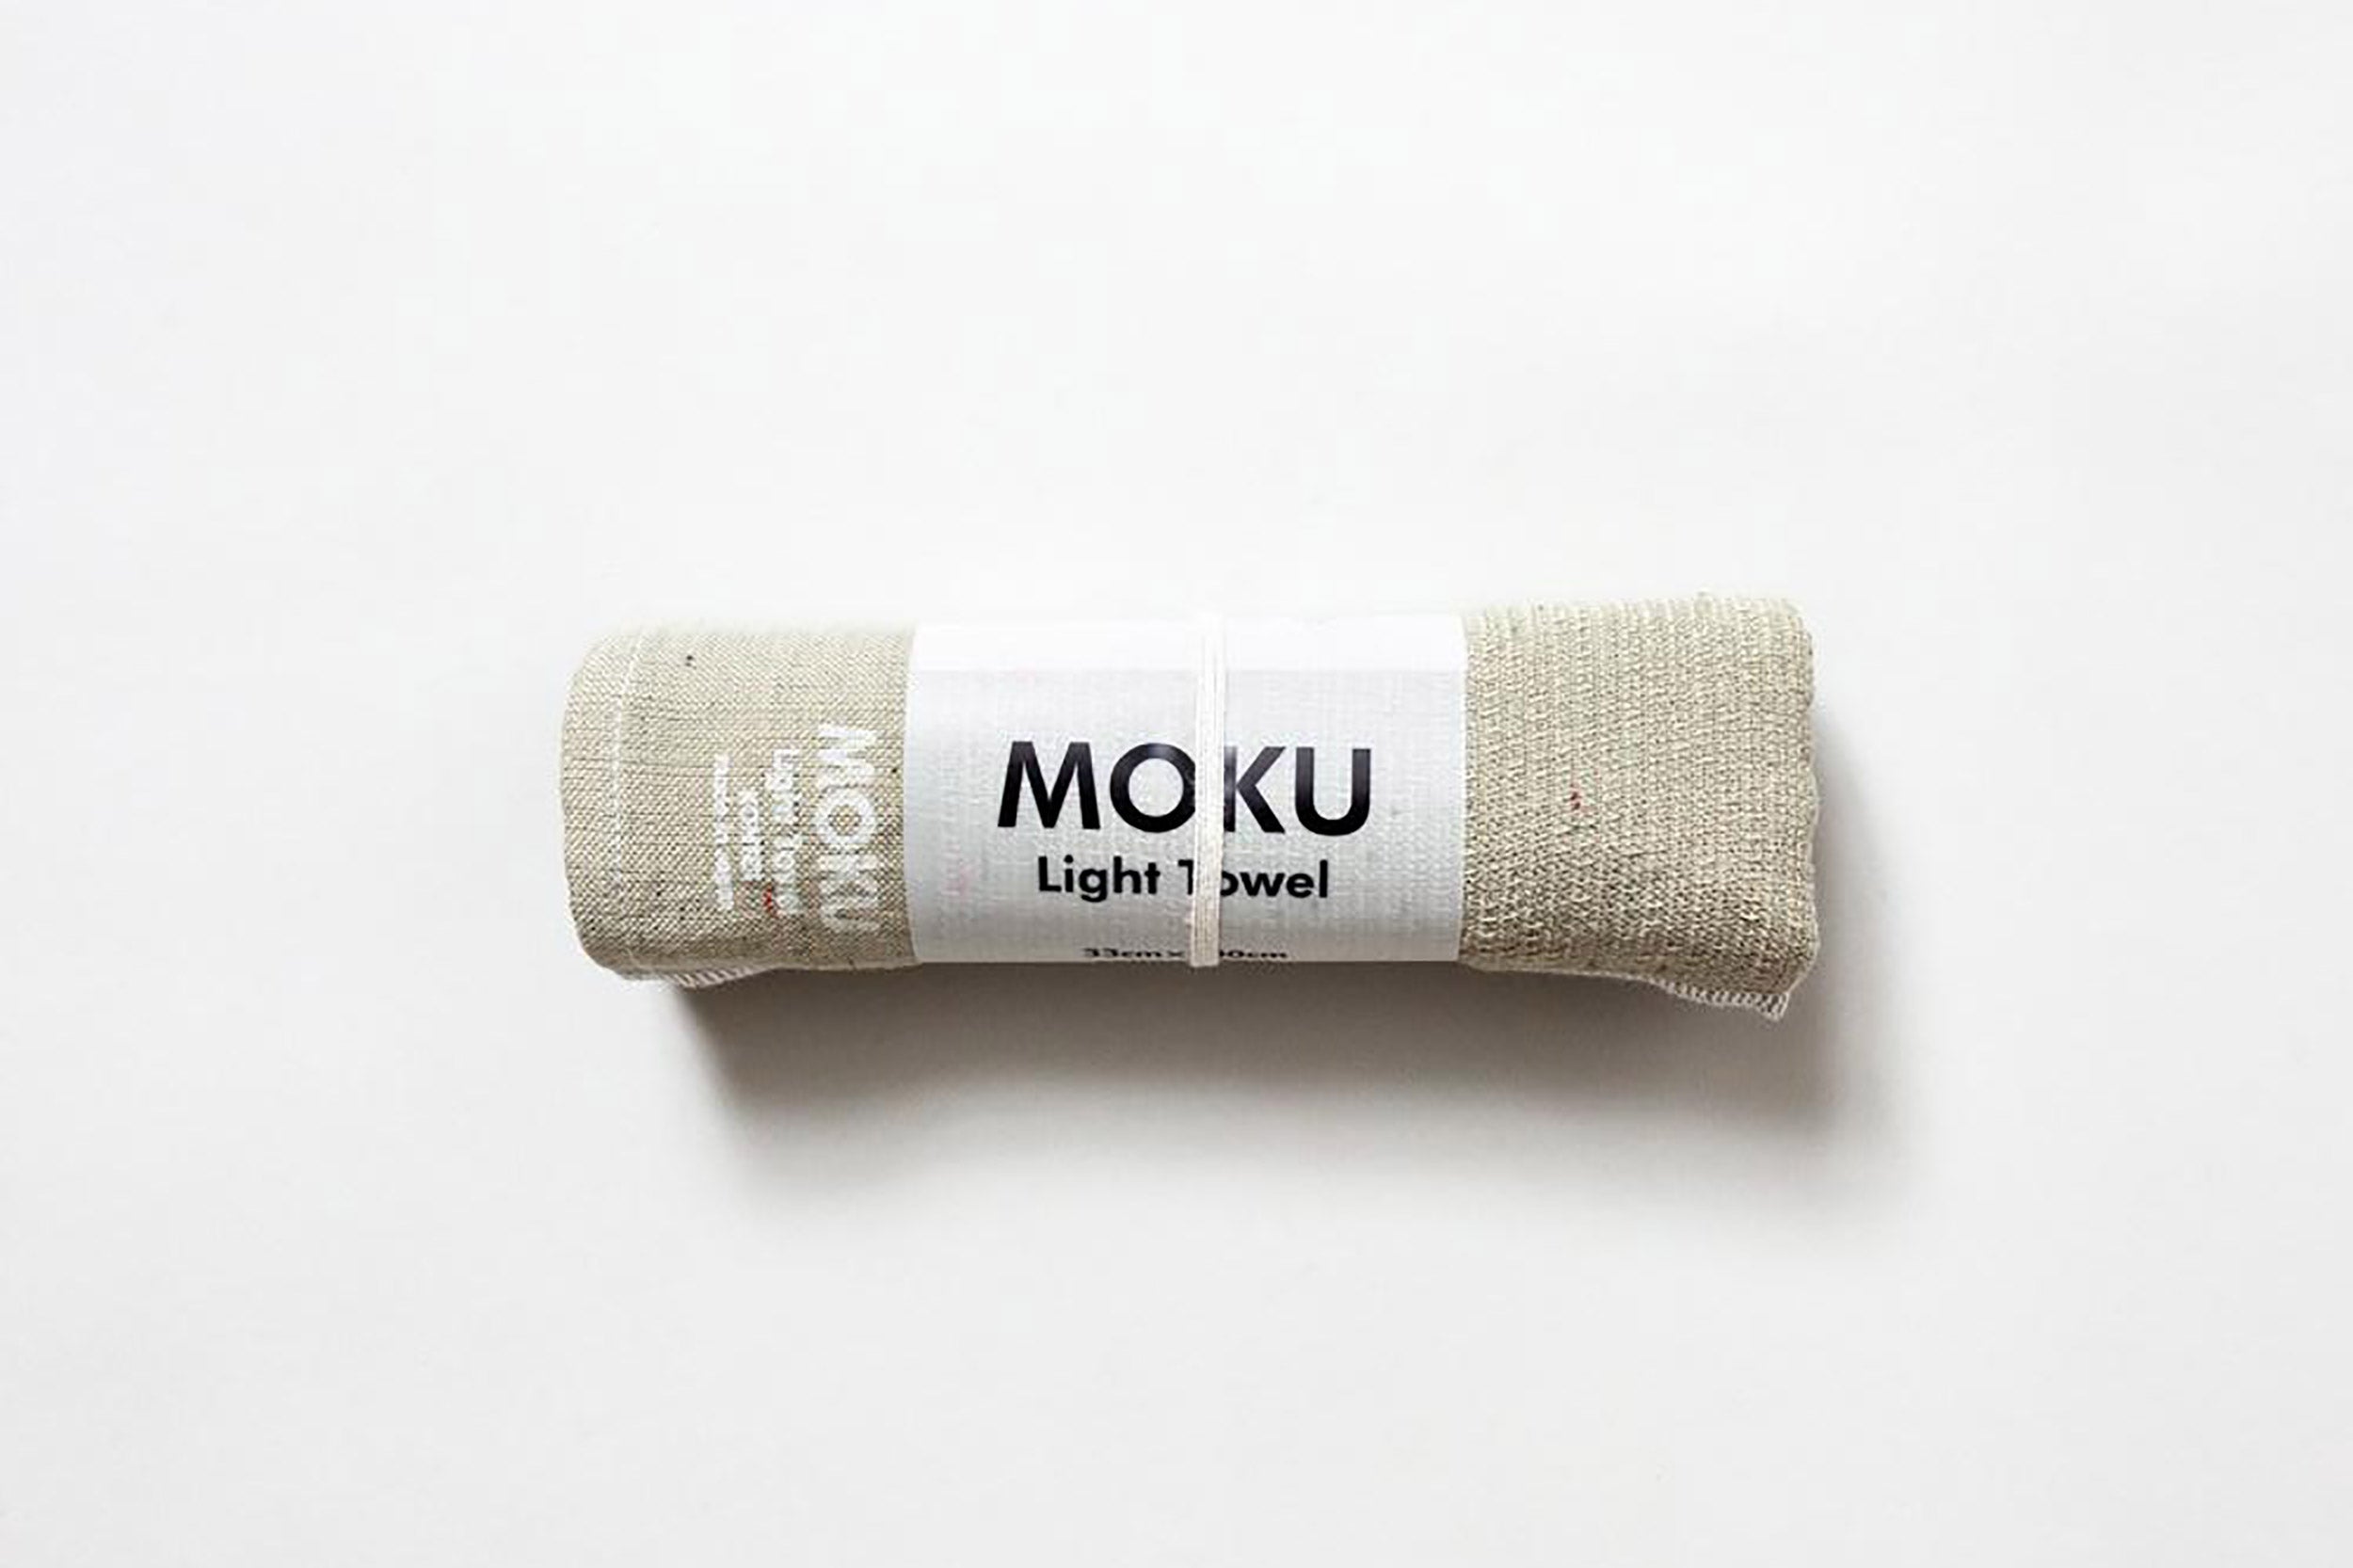 Morihata-Moku Light Towel // Khaki